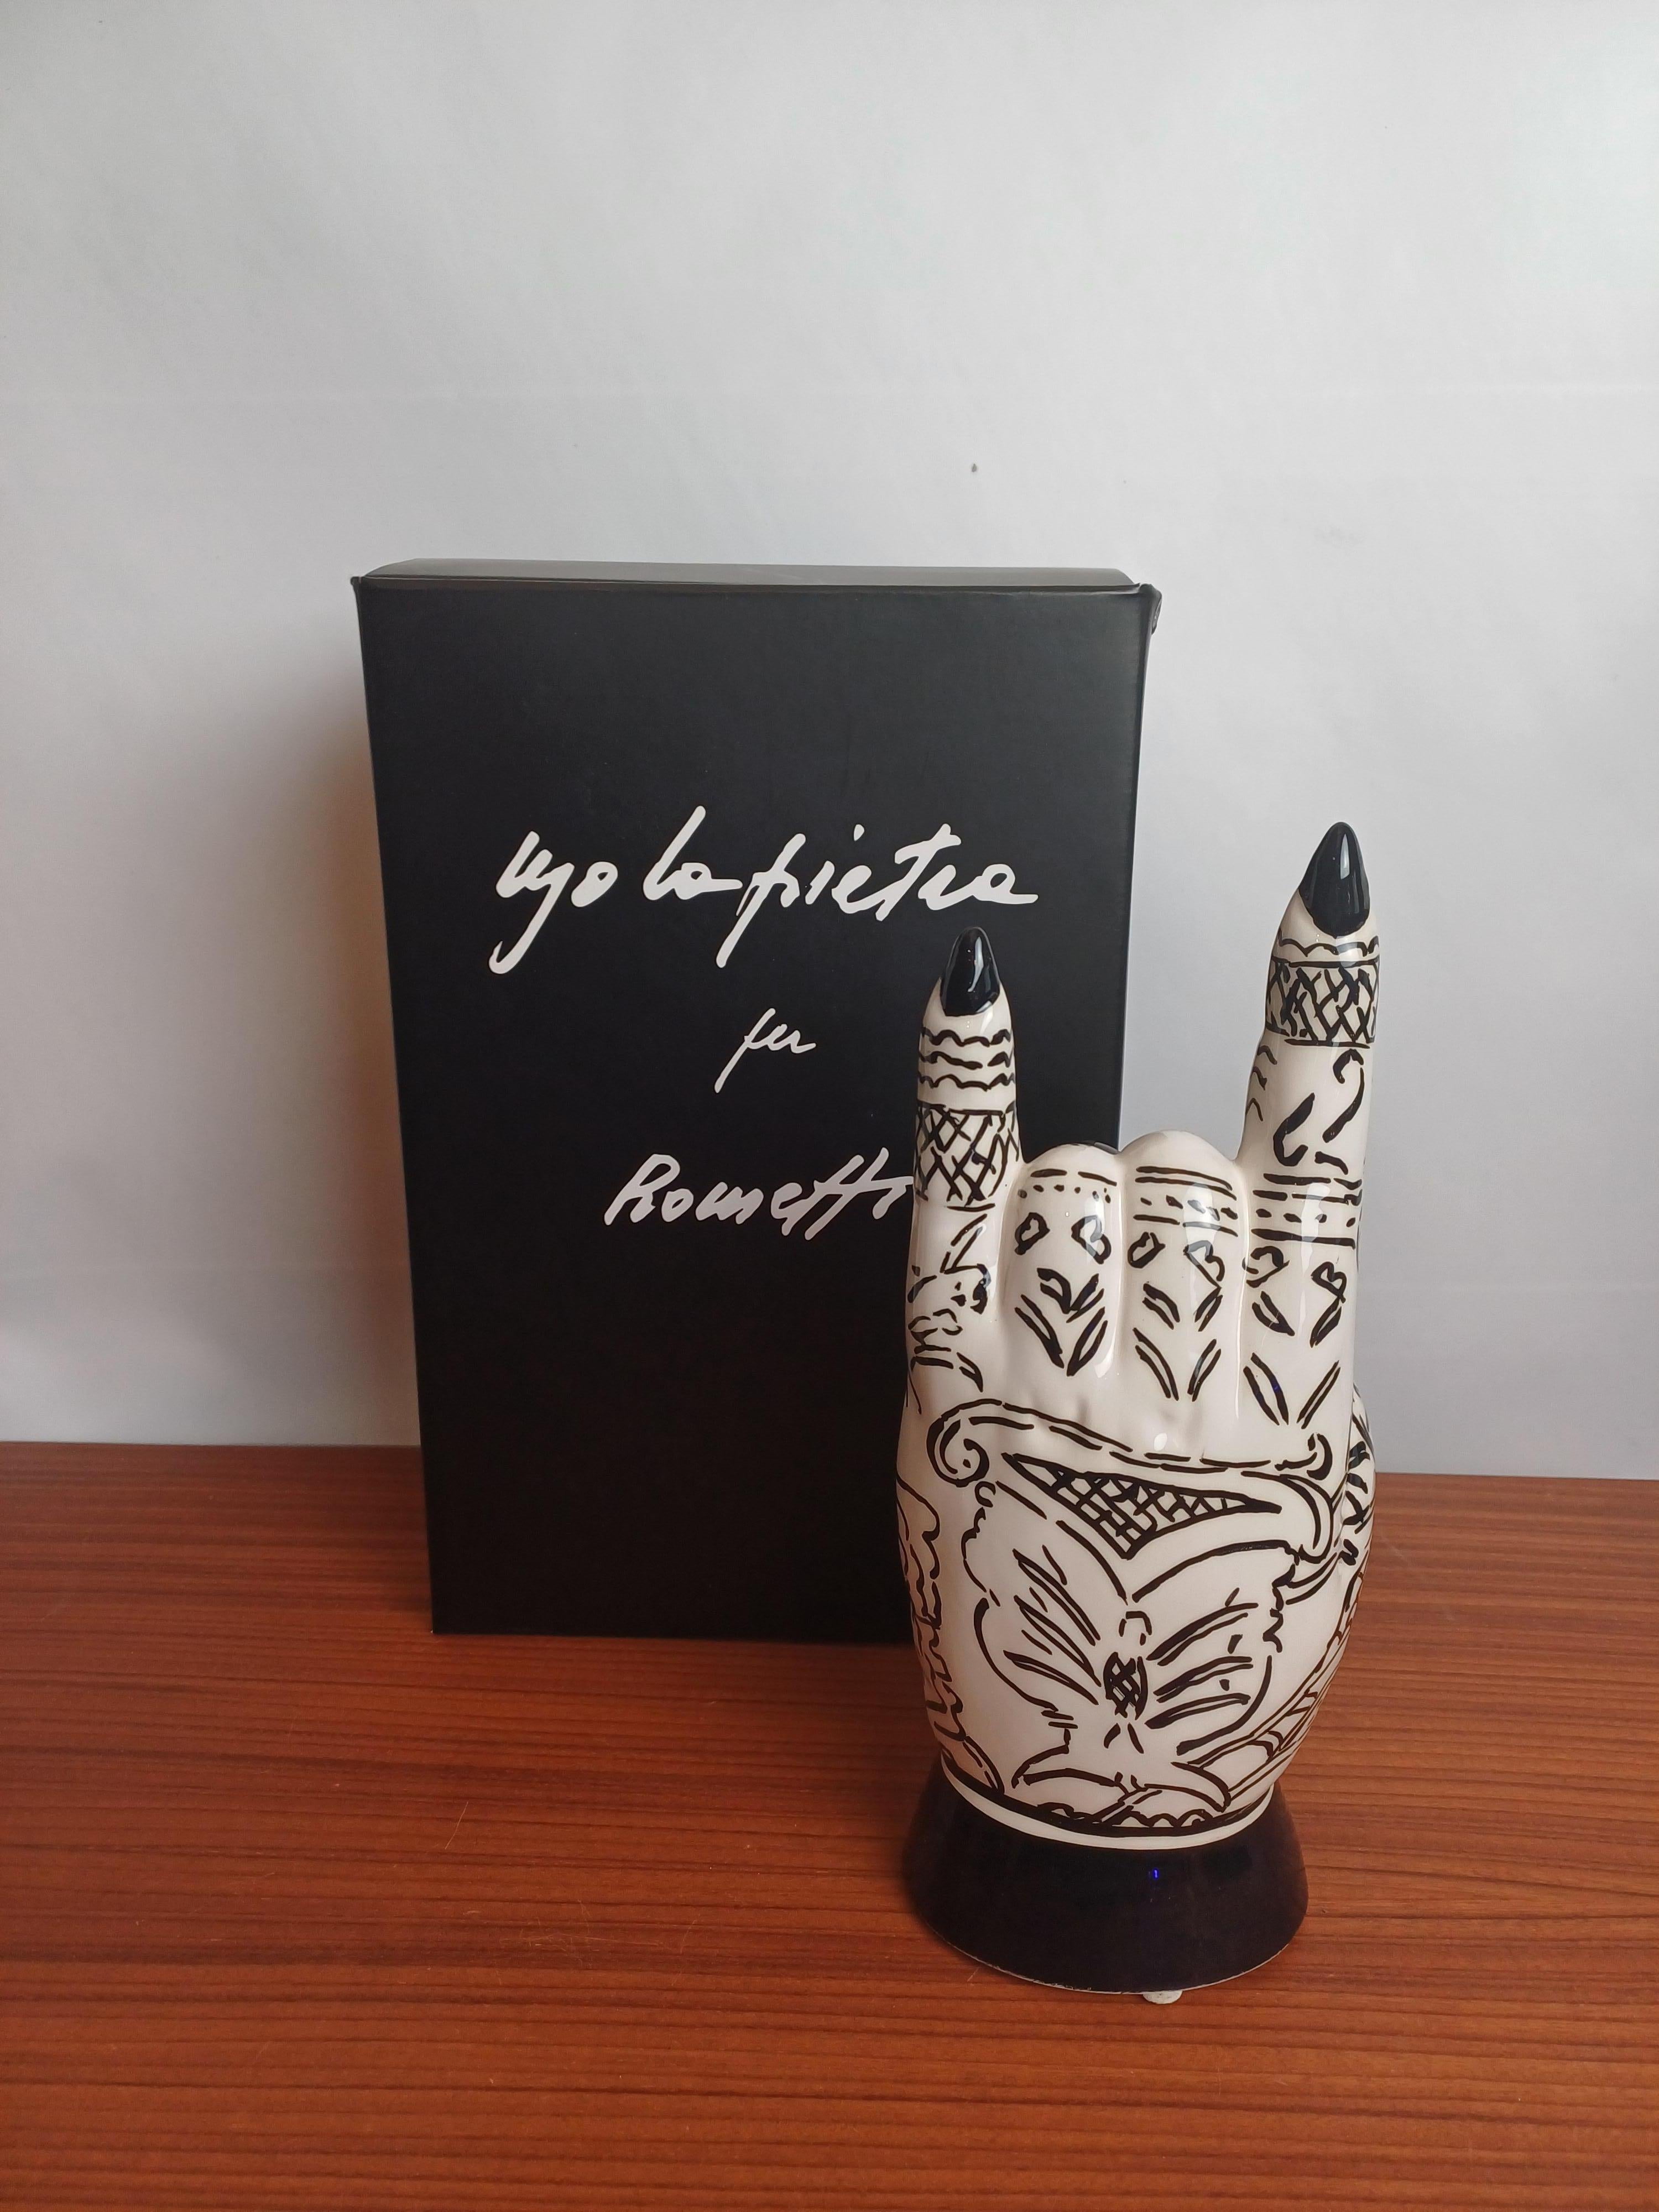 Keramische Hand entworfen von Ugo La Pietra im Jahr 2018 und produziert von Rometti ceramiche.
Keramische Hand mit ironischer und nonkonformistischer Tätowierung. Die Geschichte von Ceramiche Rometti begann am Ende der Jahre,  auch nach neunzig